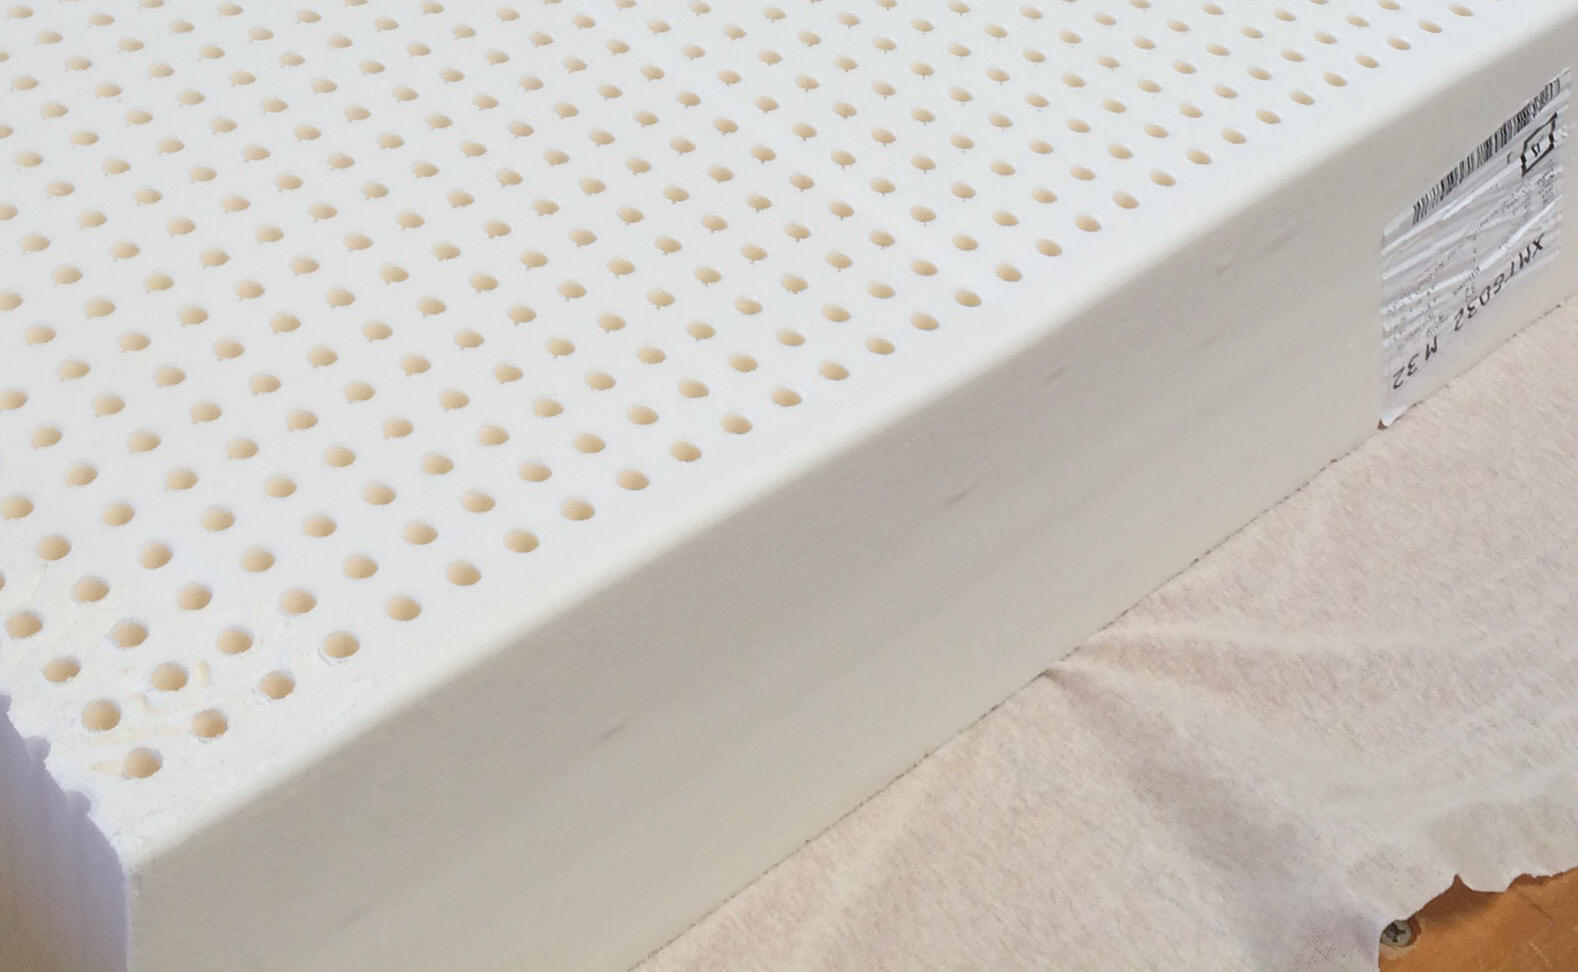 Phoenix latex mattress